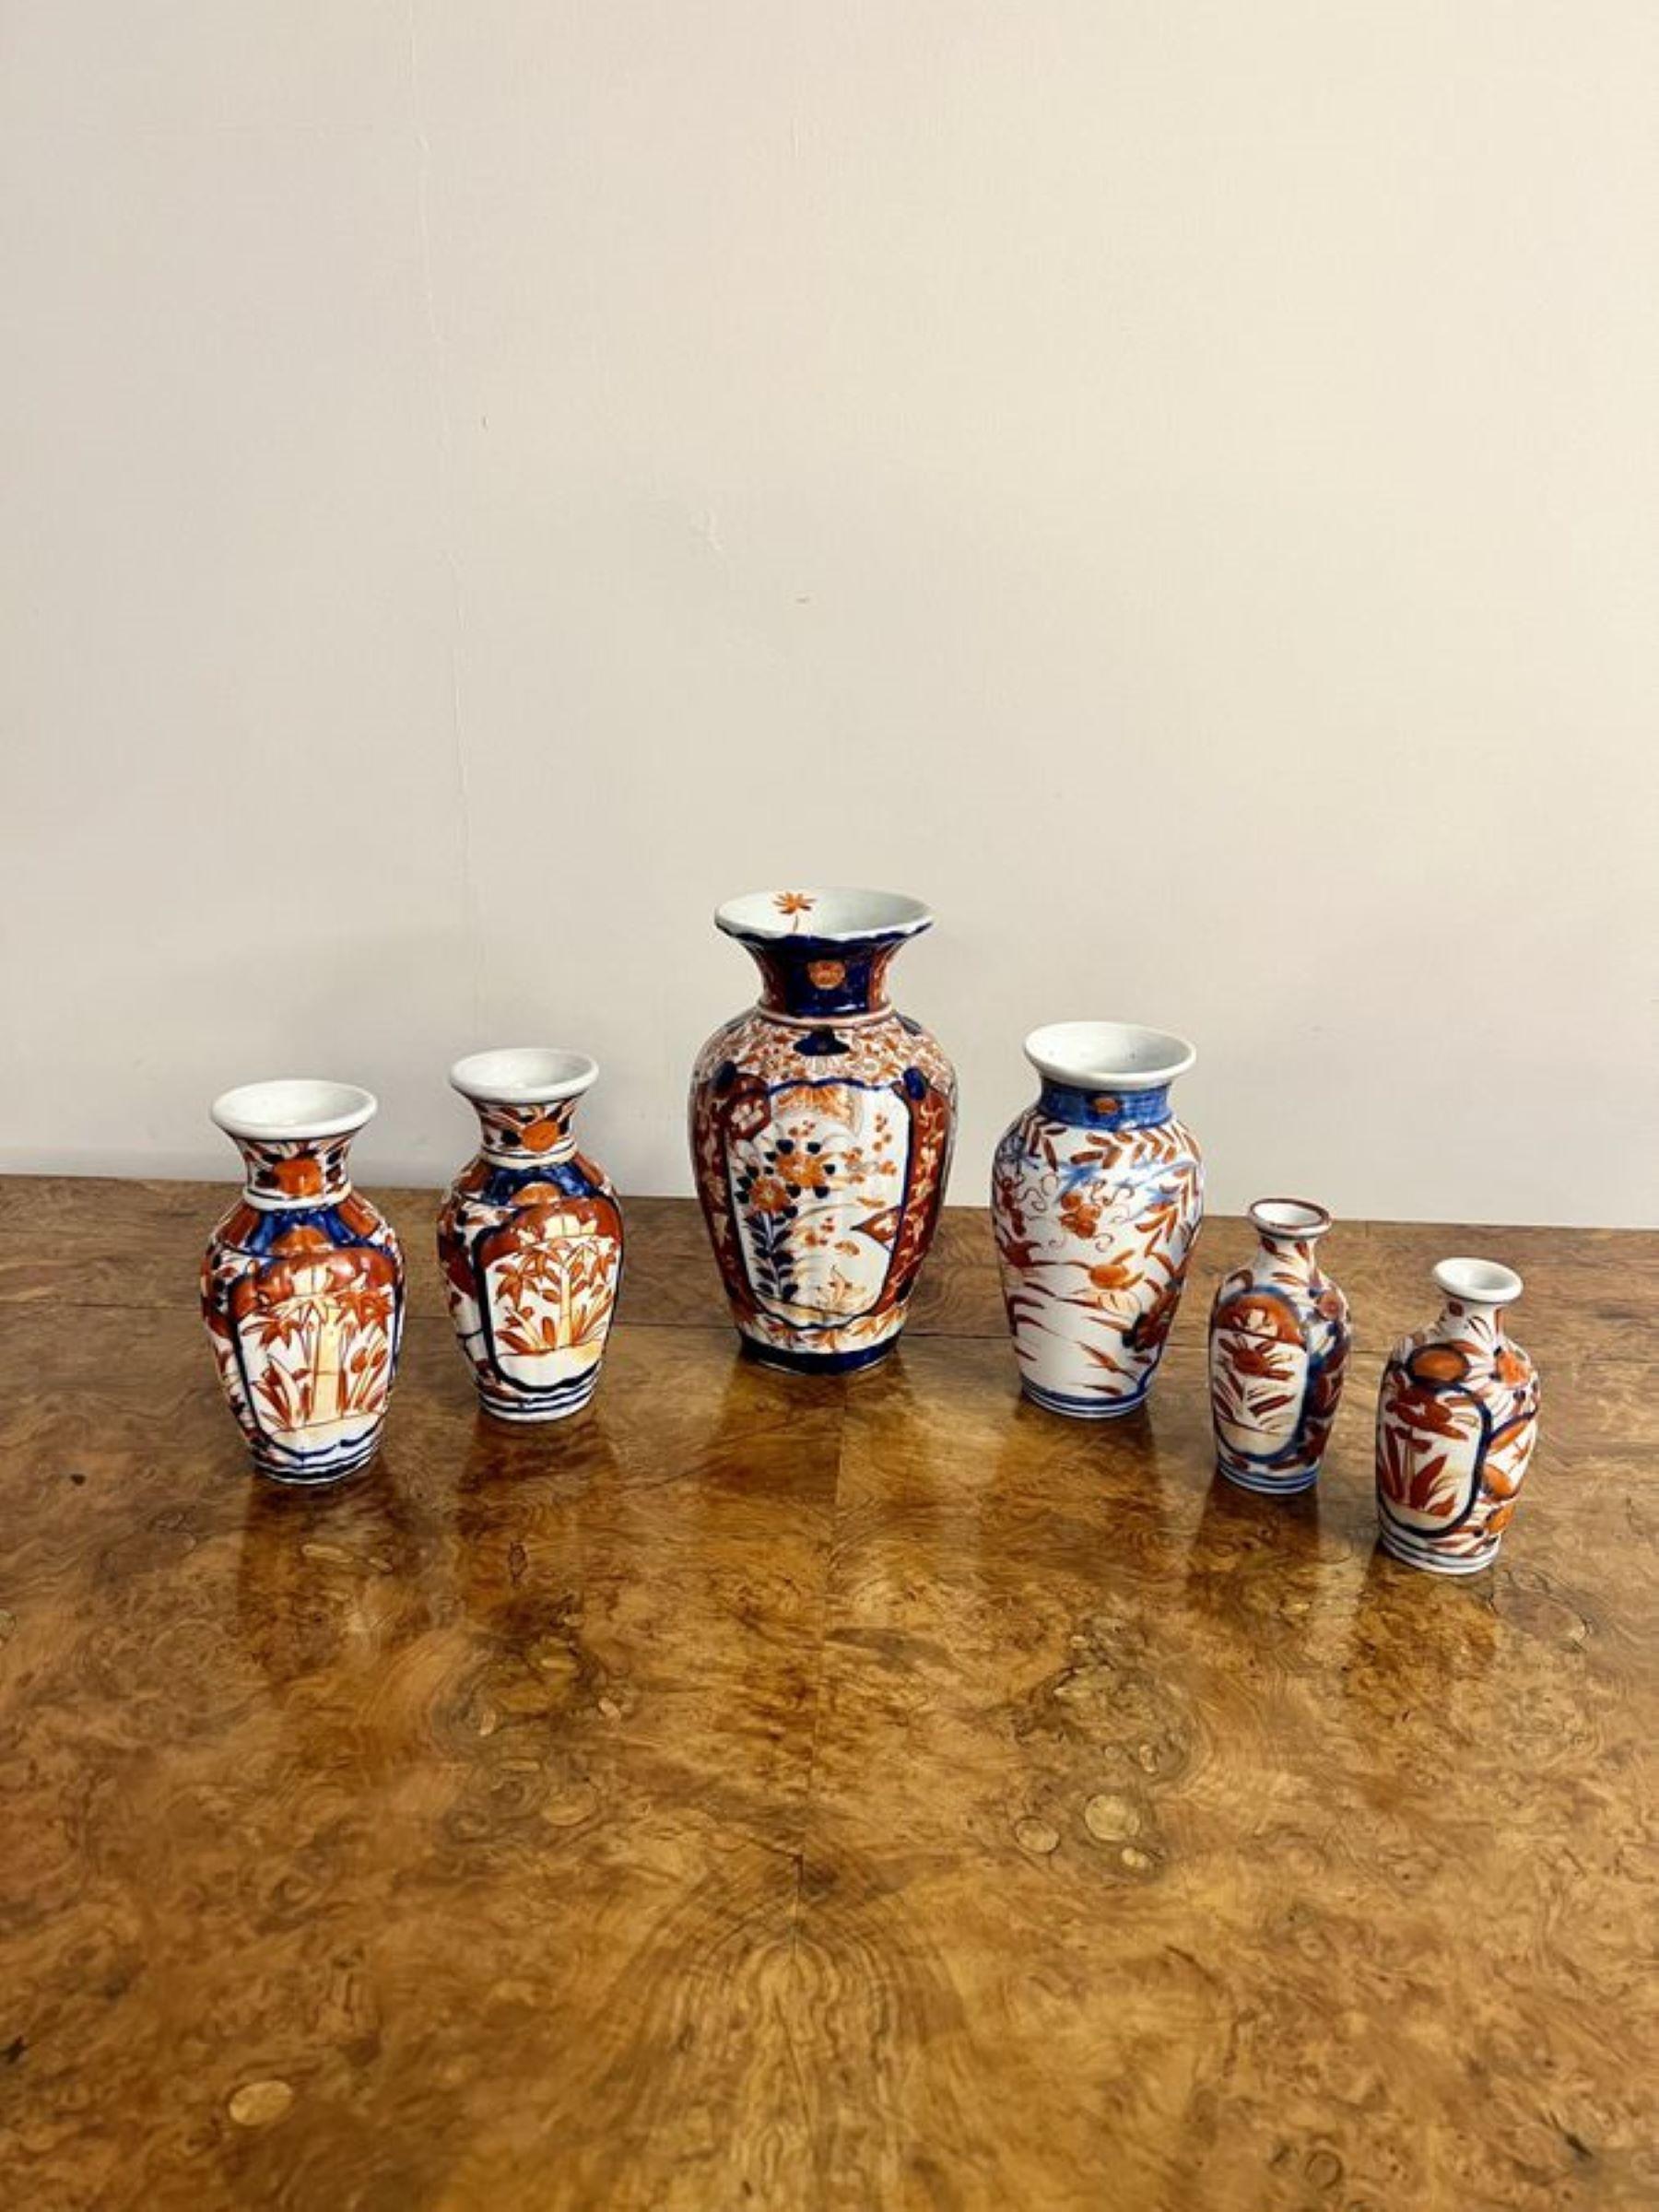 Merveilleuse collection de six petits vases imari japonais anciens. Merveilleuse collection de divers vases imari japonais anciens, peints à la main dans de magnifiques couleurs rouge, bleu et blanc, décorés de fleurs, de feuilles et de rinceaux.